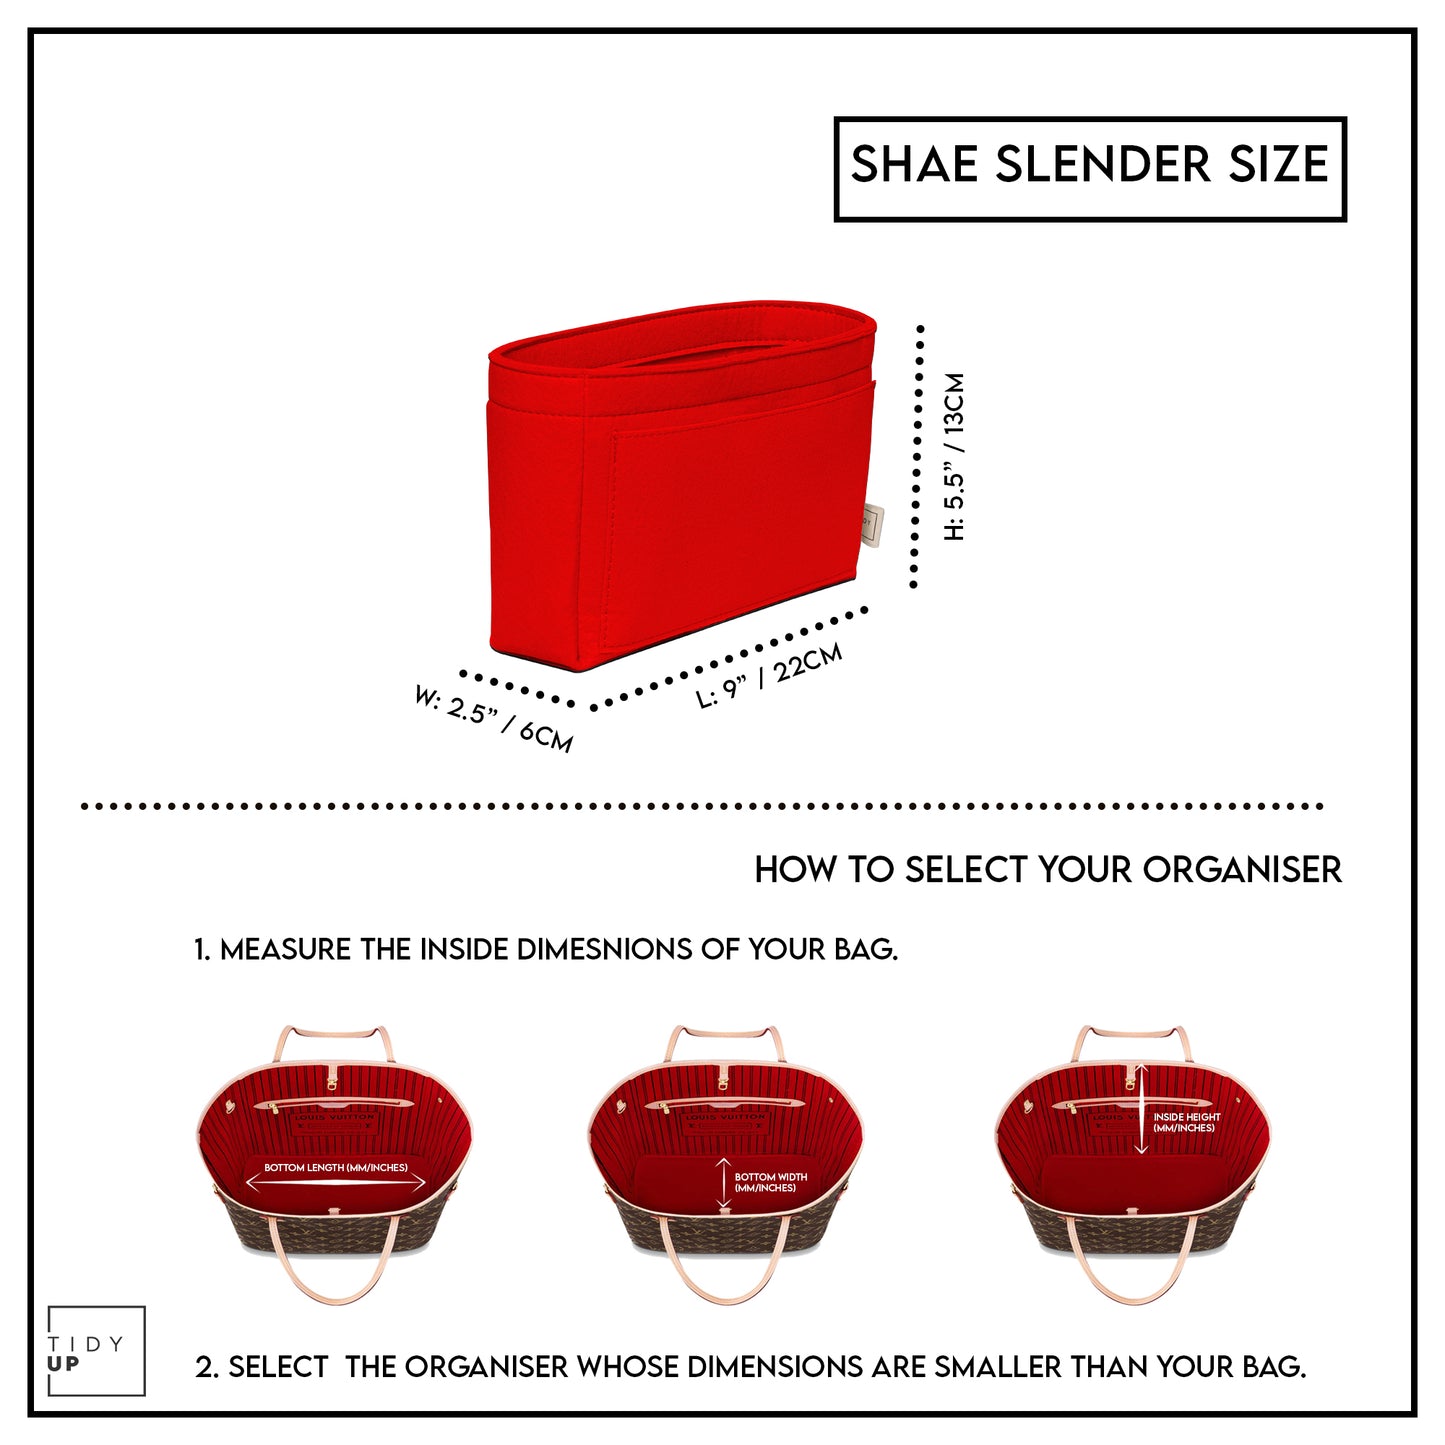 Shae Slender